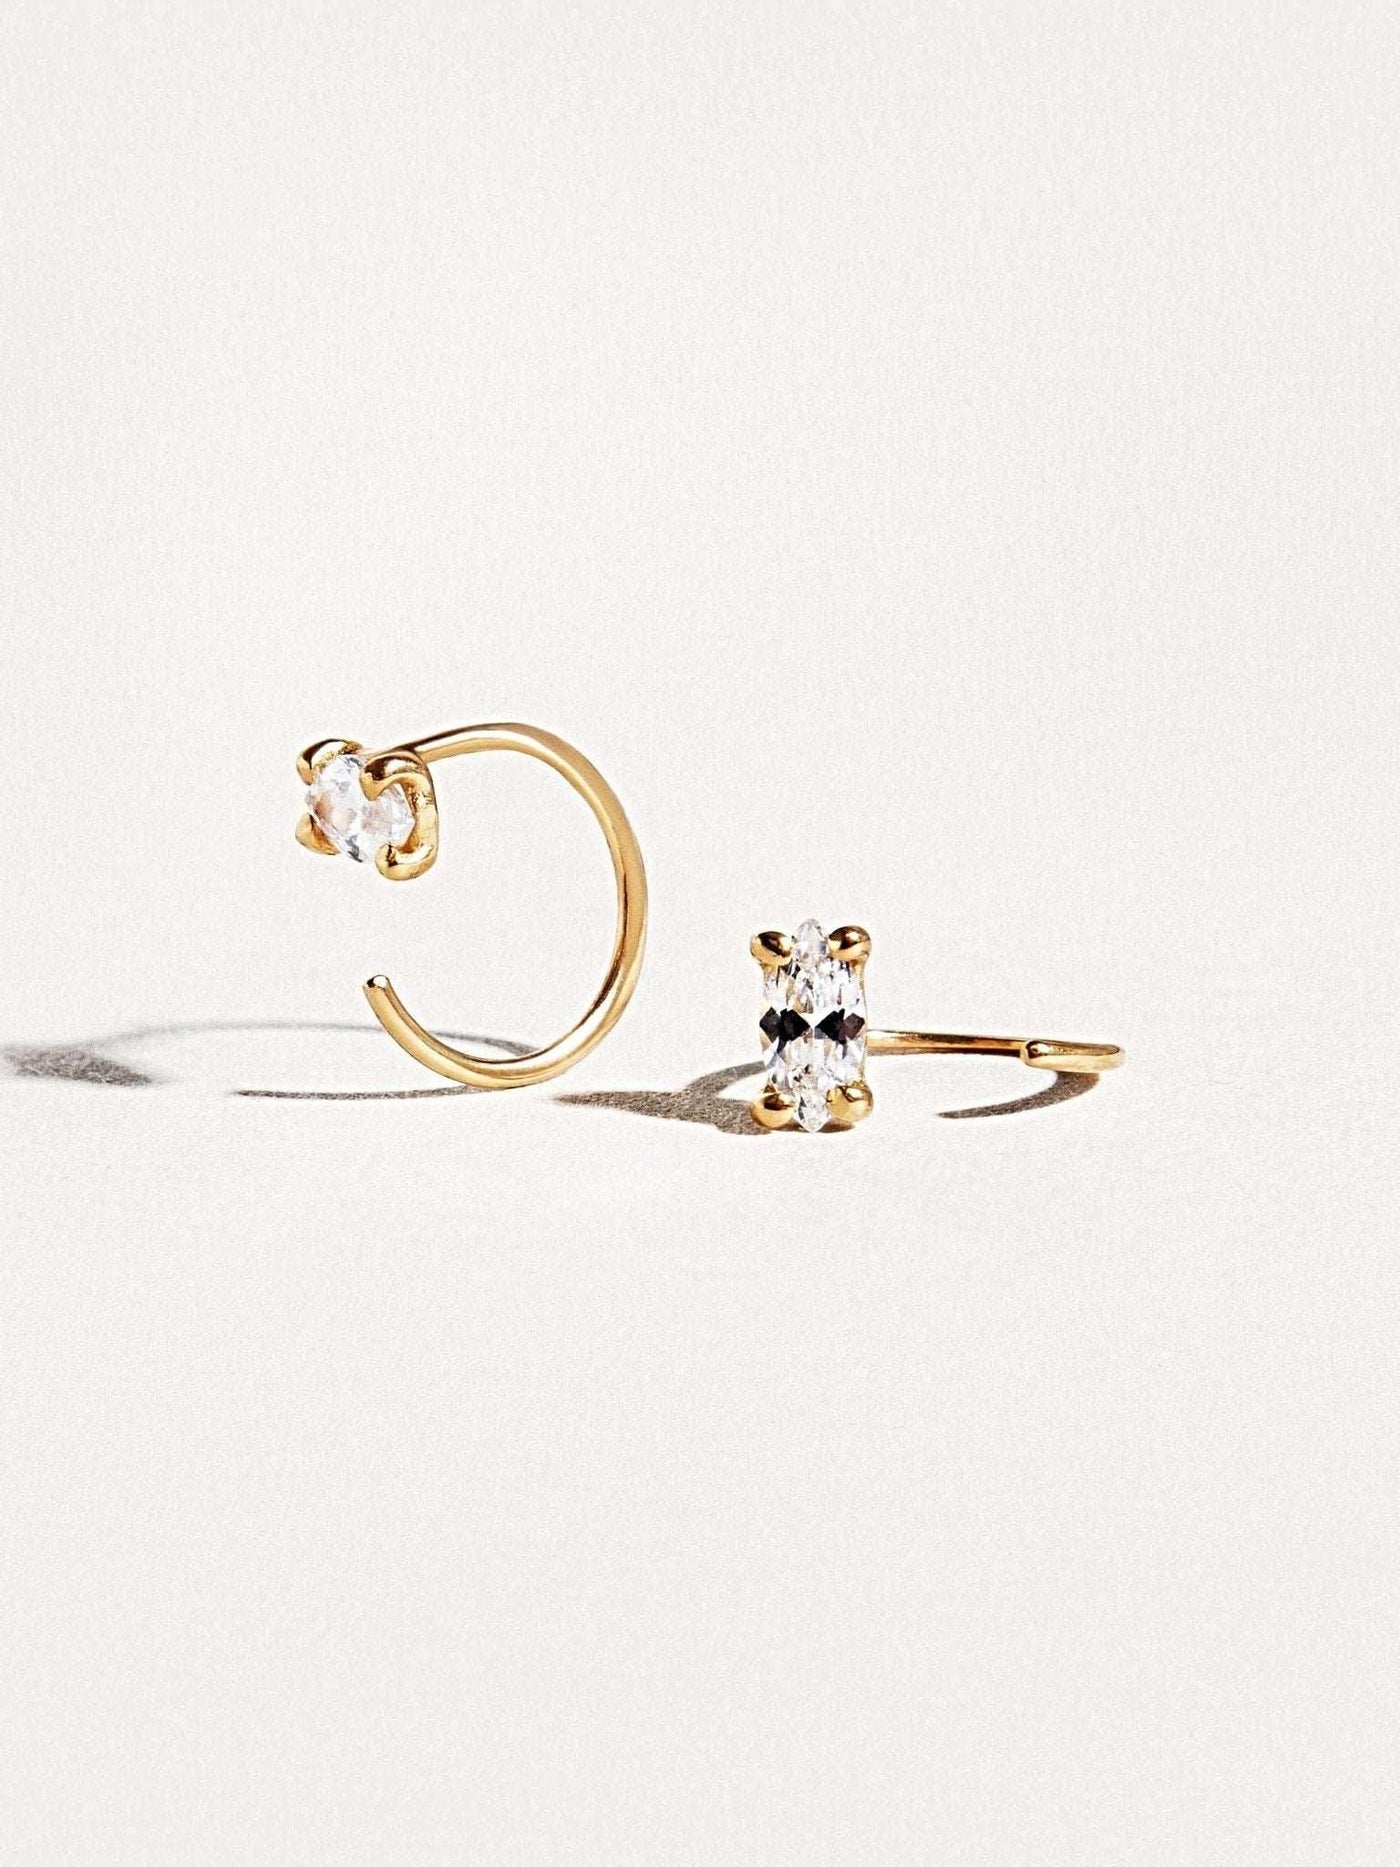 Alexander Huggie Hoop Earrings - 24K Gold PlatedBackUpItemsBridesmaid GiftLunai Jewelry